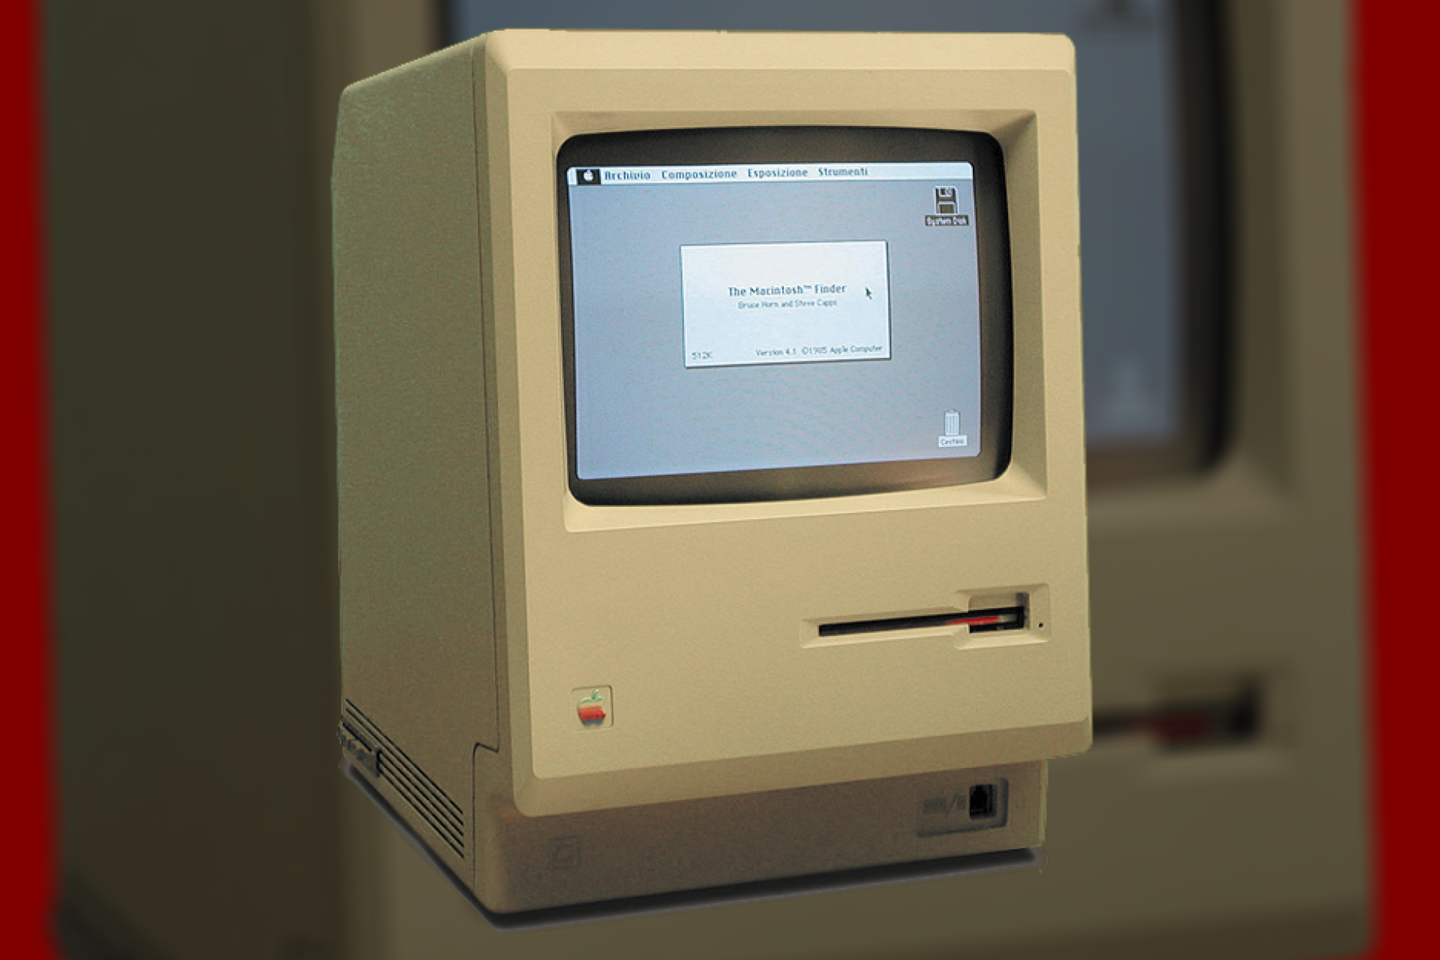  McIntosh obuolių veisle pavadintą „Apple“ kompiuterį pristatė reklama, žadėjusi perversmą kompiuterių rinkoje.<br> Wikimedia commons